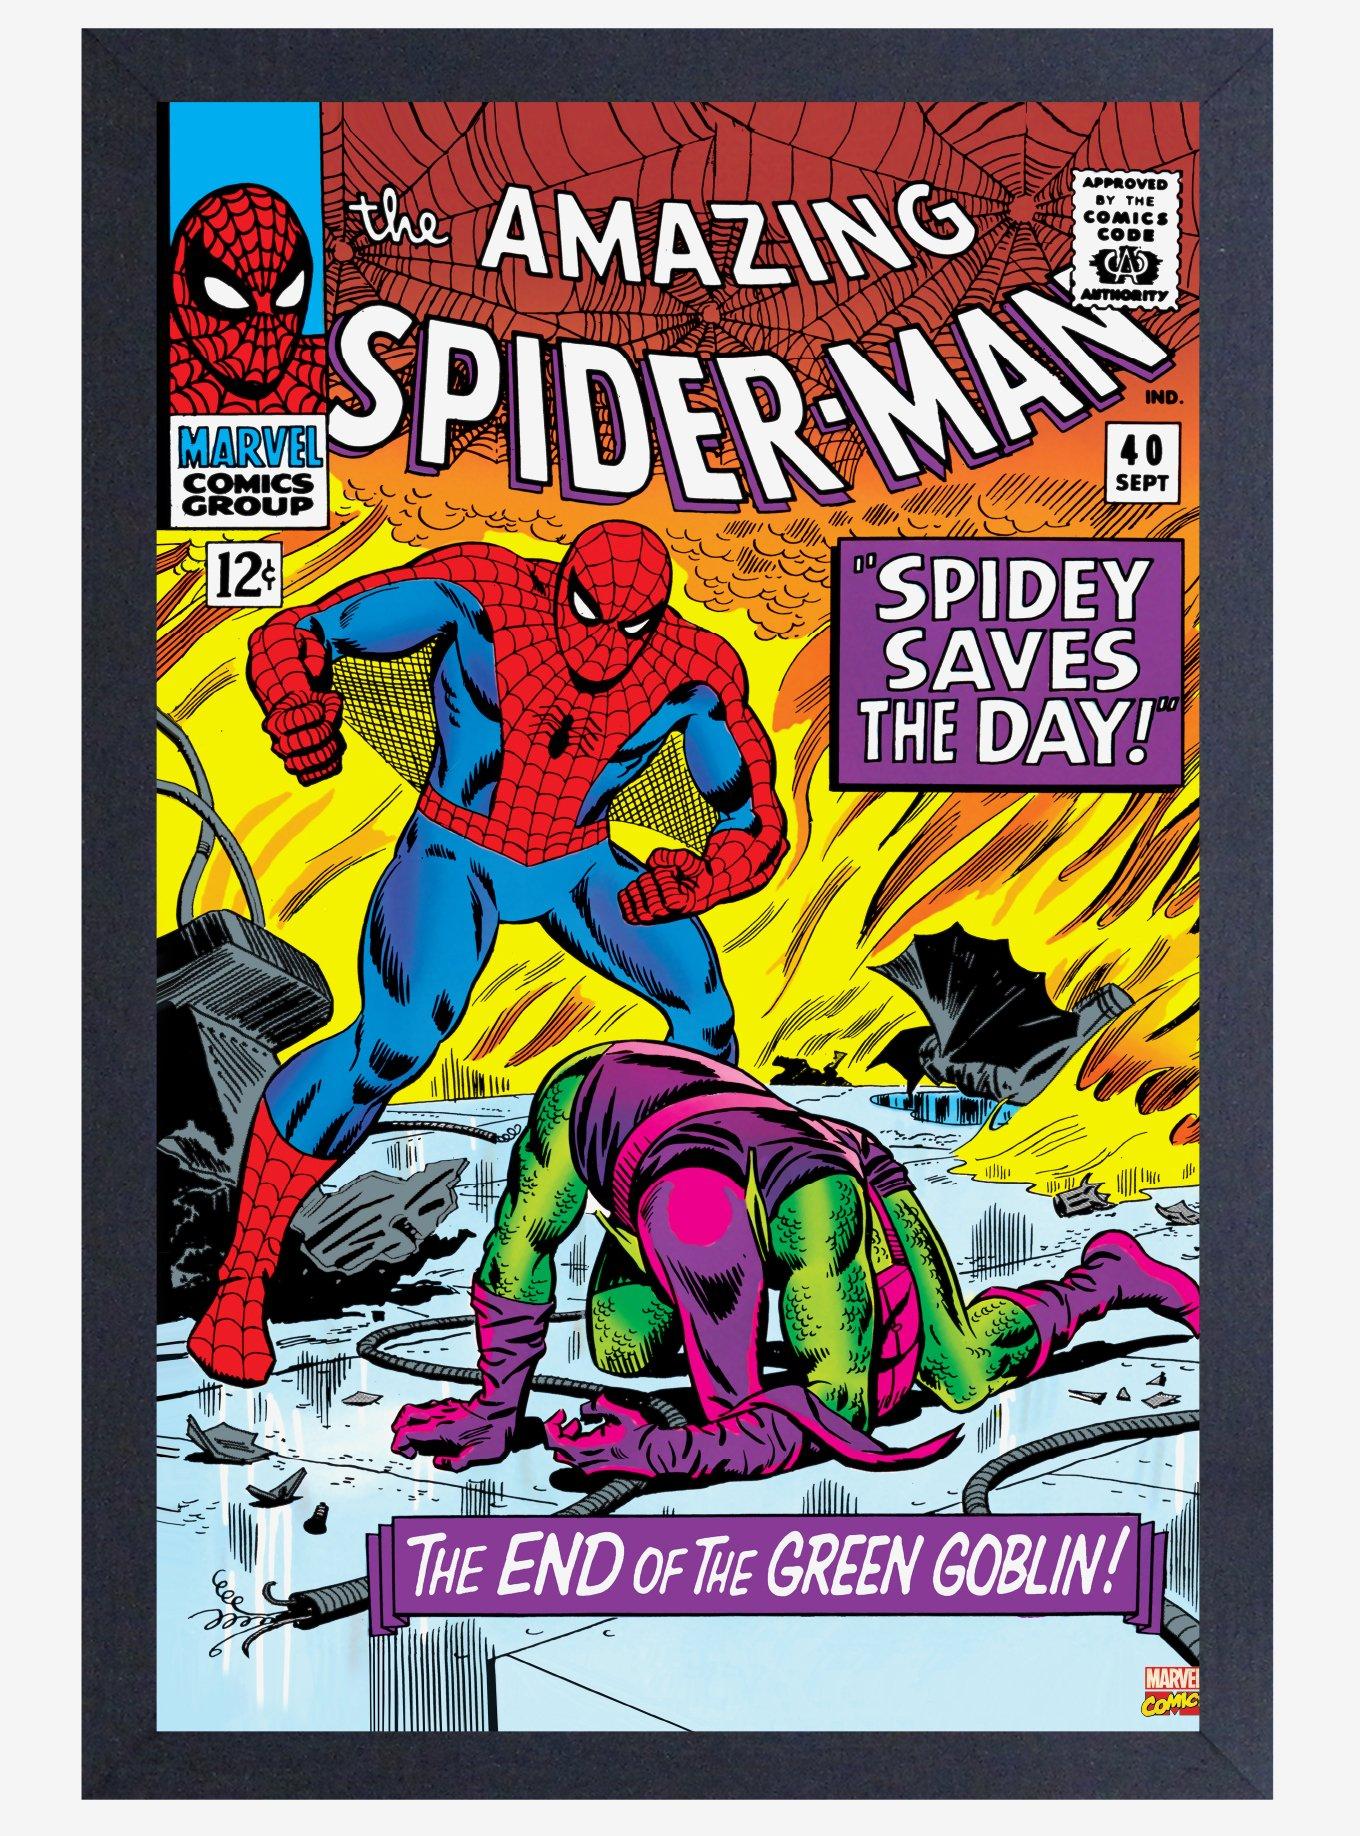 Marvel Spiderman #40 Poster, , hi-res